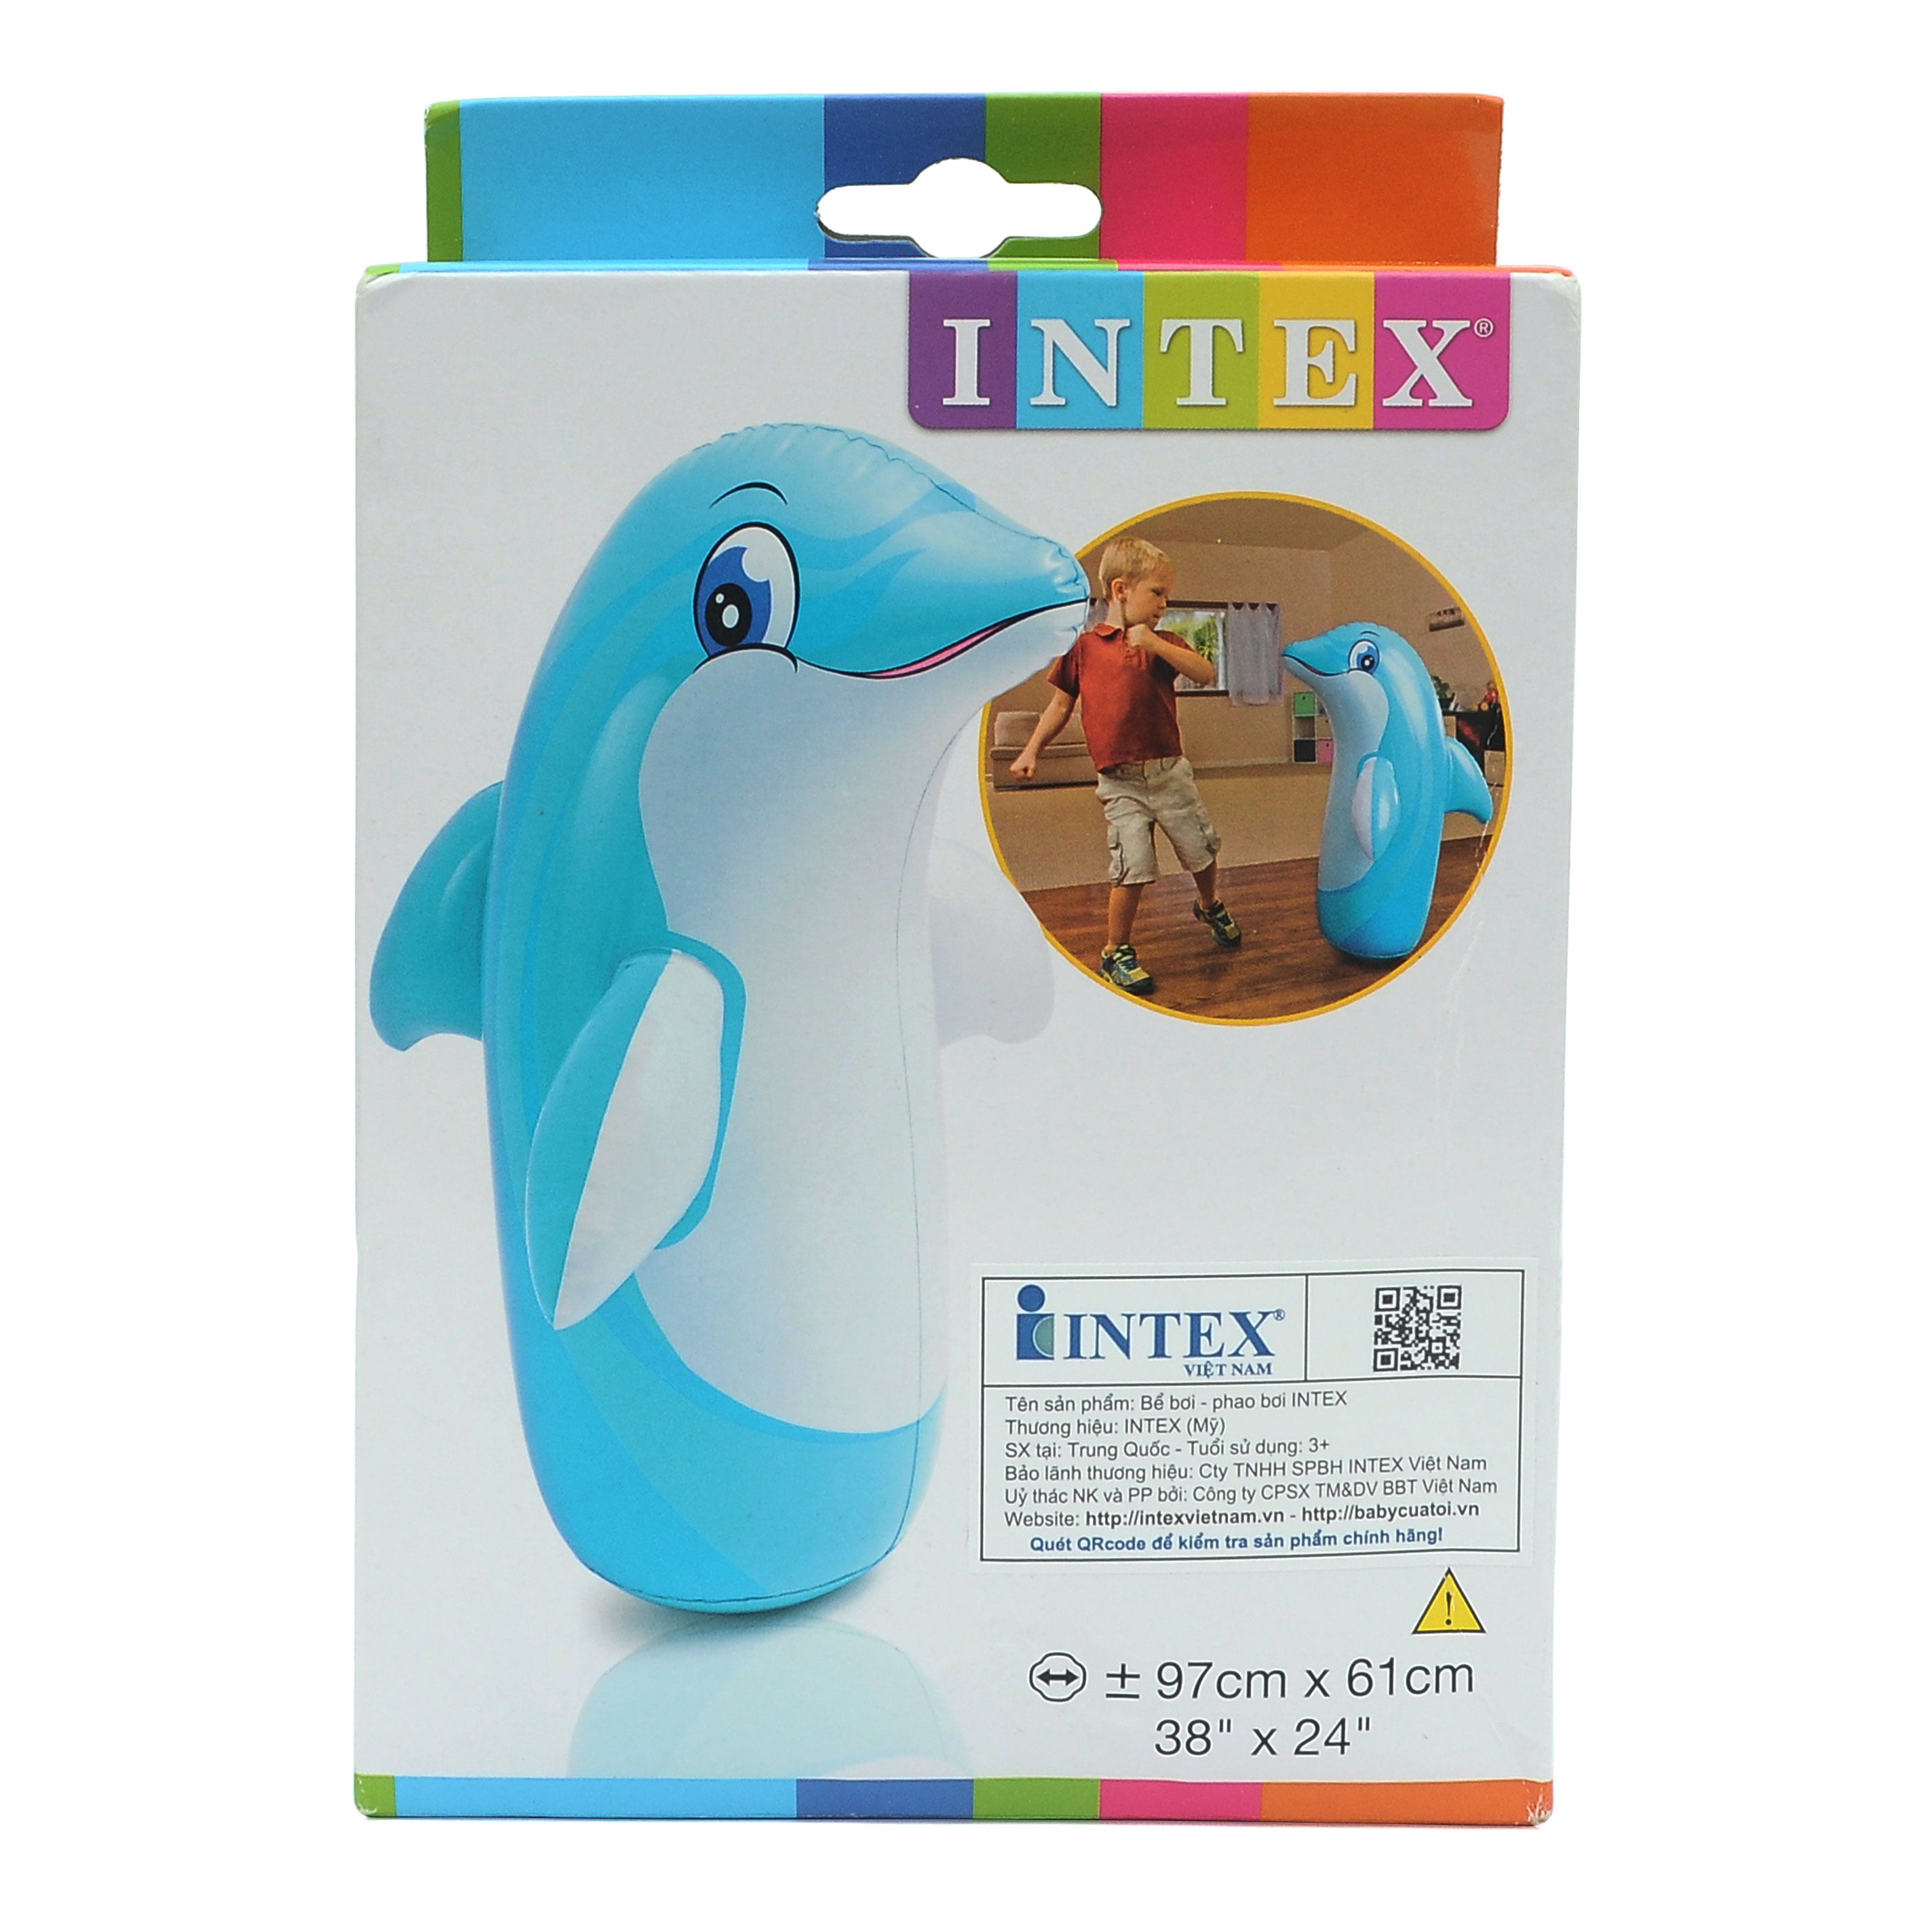 38" x 24" Intex 3D Bop Bag Blow Up Inflatable Dolphin 